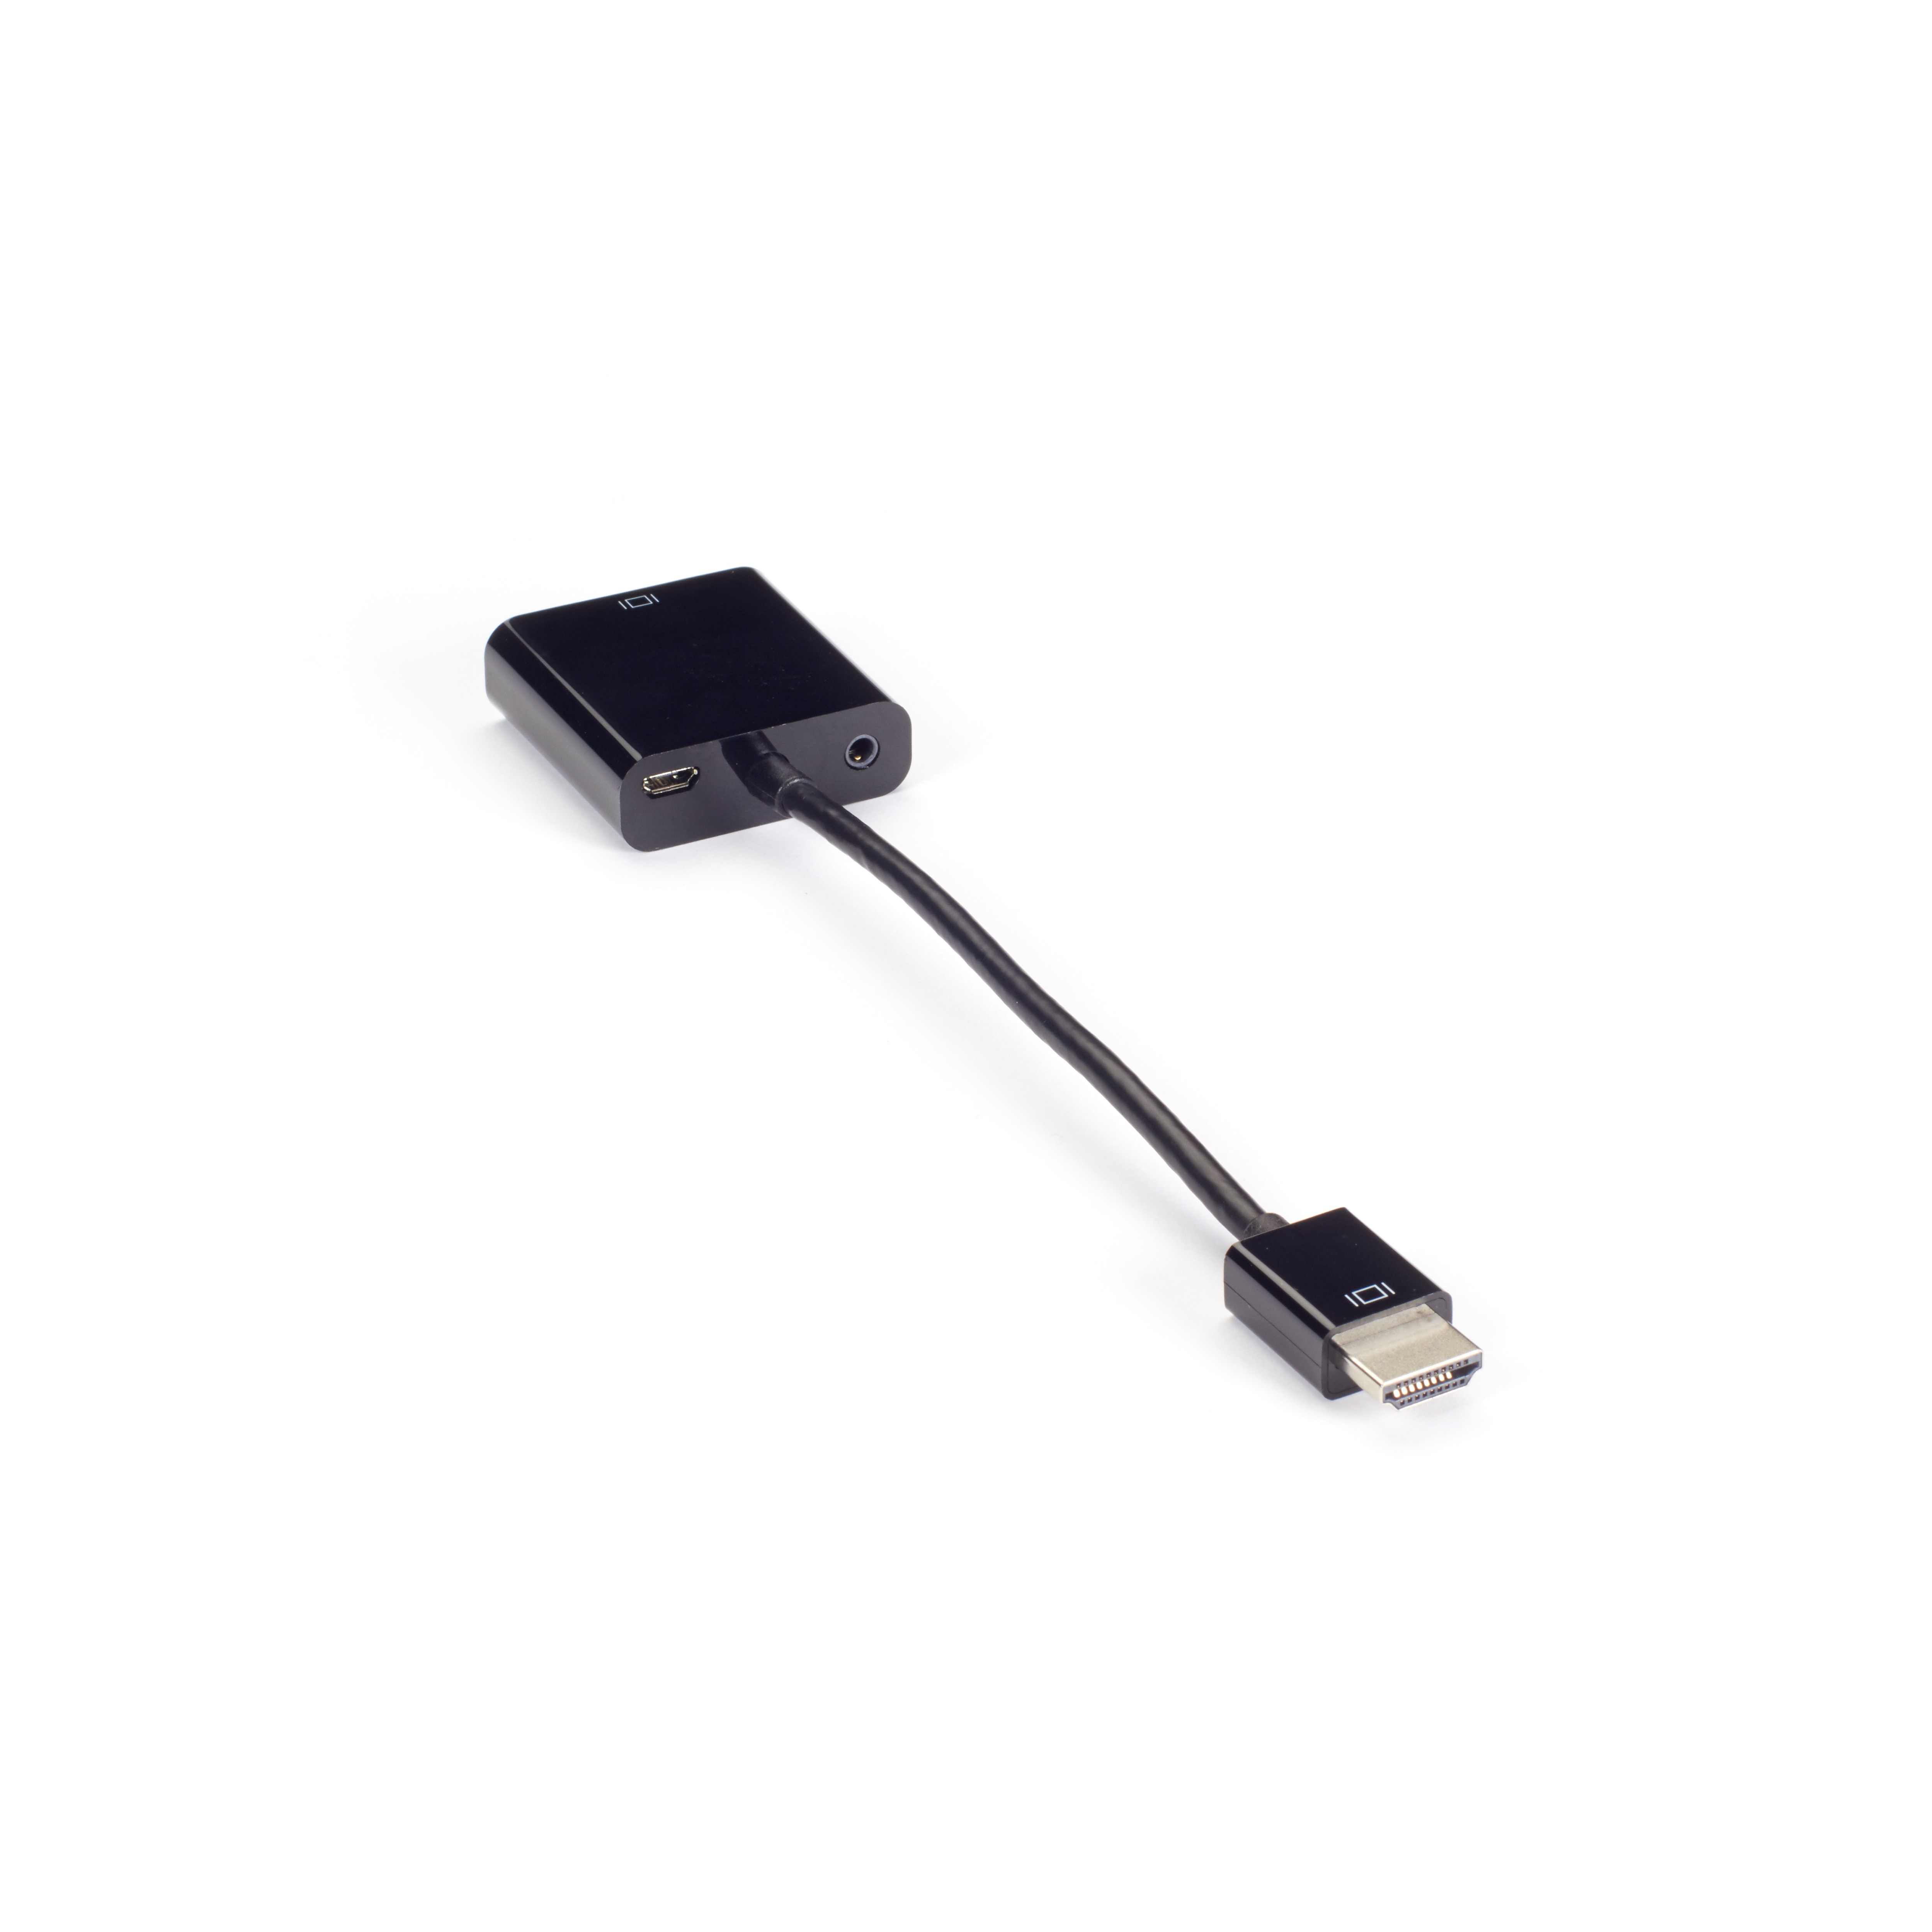 Guia idea huella Video Adapter Dongle - HDMI Male to VGA Female with Audio I Black Box